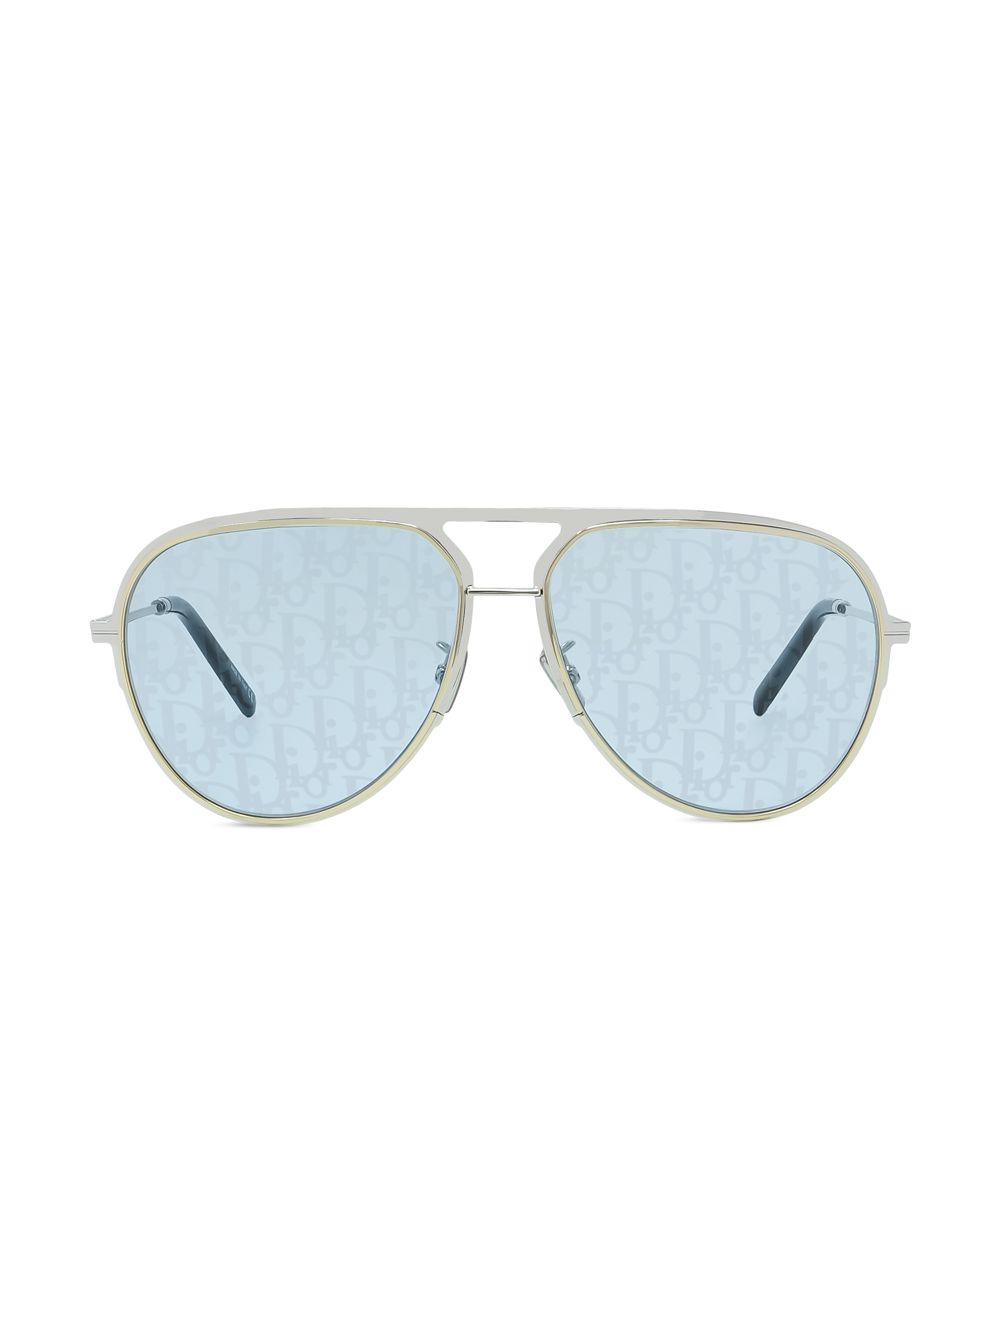 Солнцезащитные очки-пилоты DiorEssential A2U 60 мм Dior, синий очки авиаторы dioressential a2u f dior